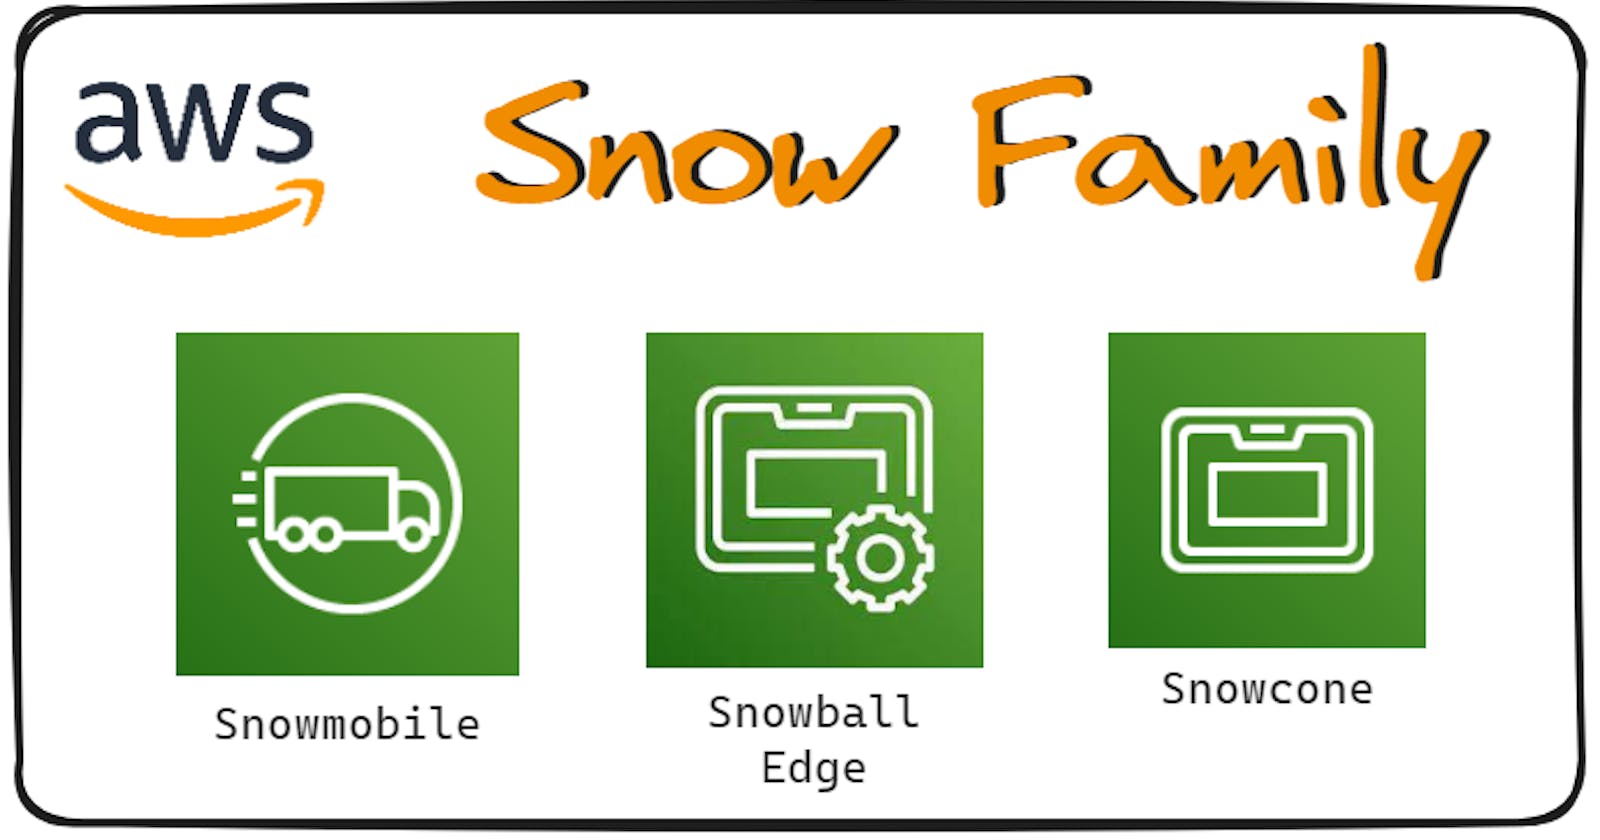 AWS Snow Family